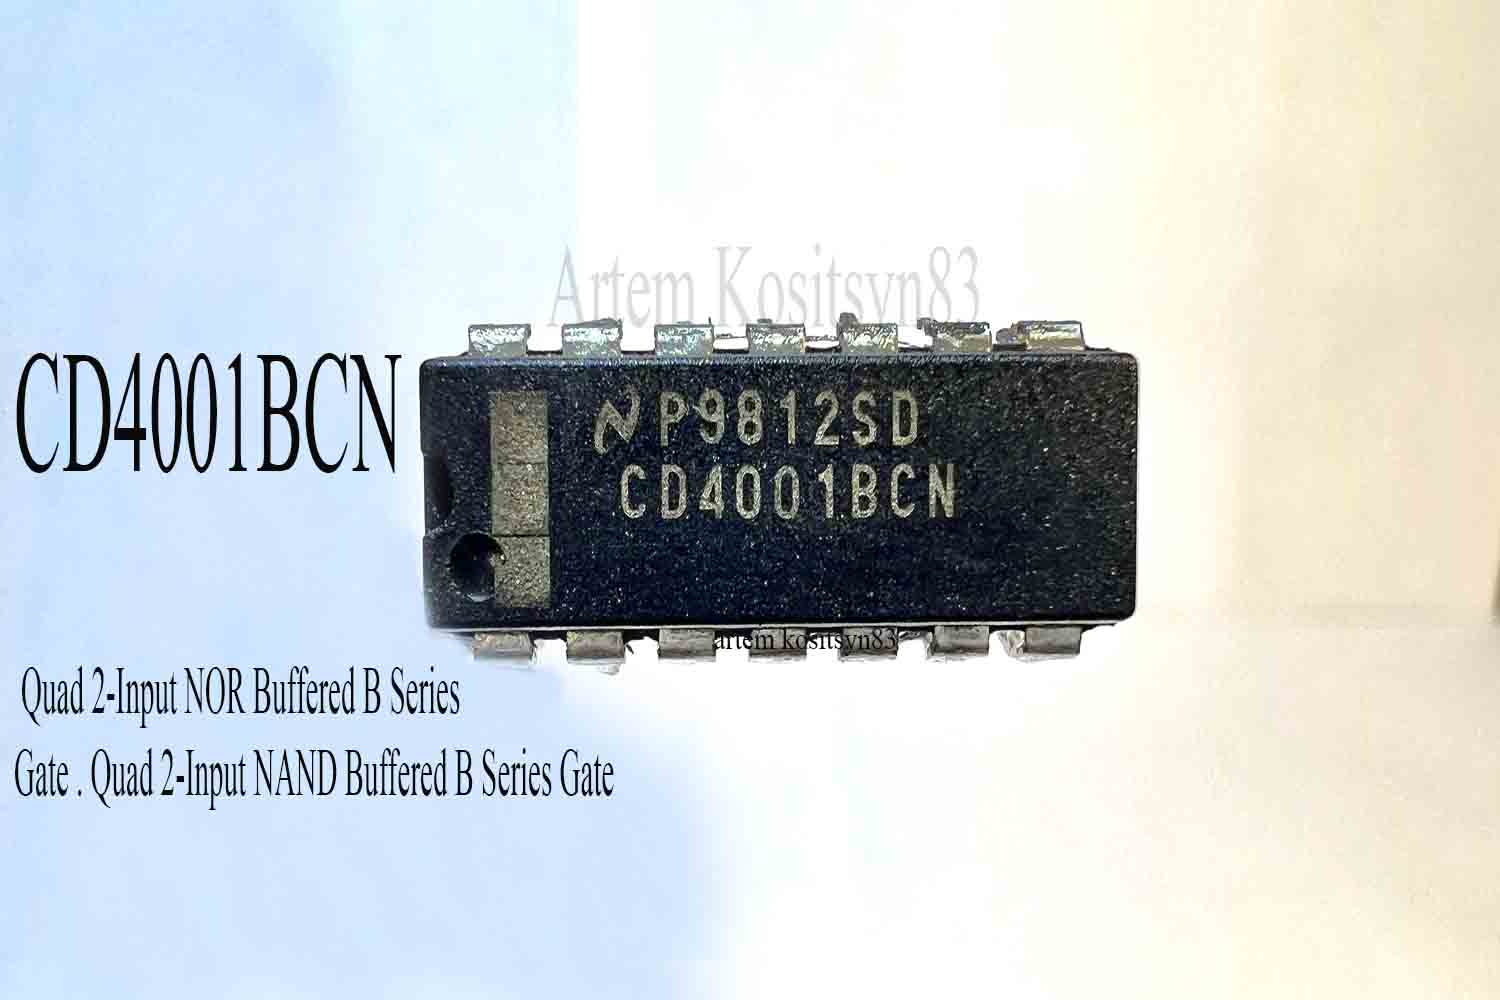 Подробнее о статье CD4001BC.Quad 2-Input NOR/NAND Buffered B Series Gate